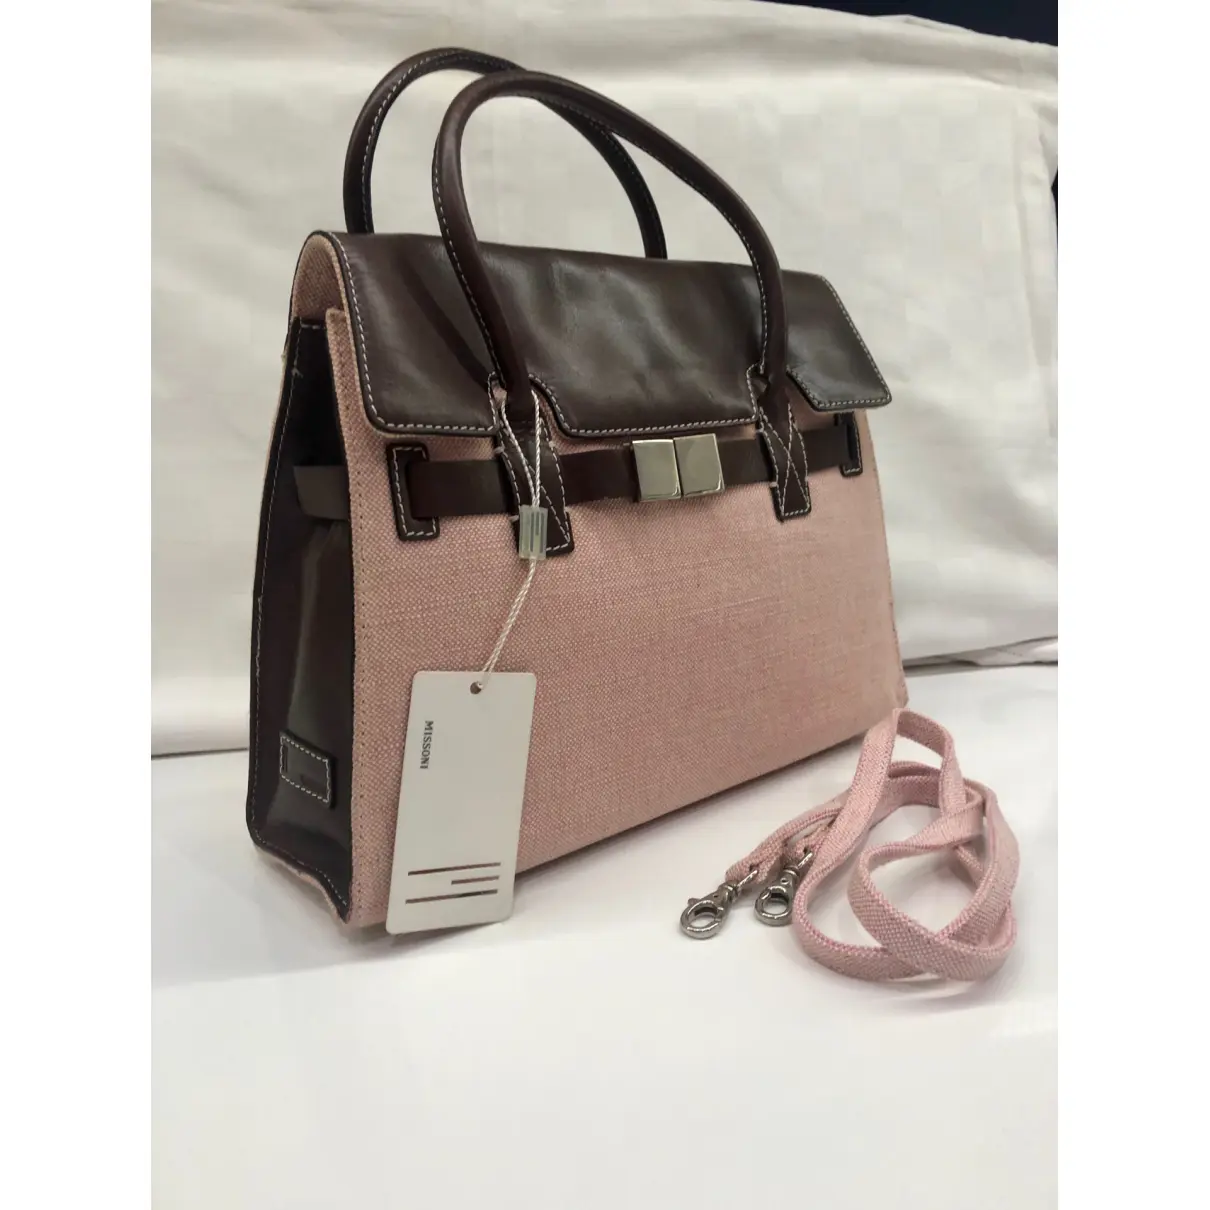 Leather handbag Missoni